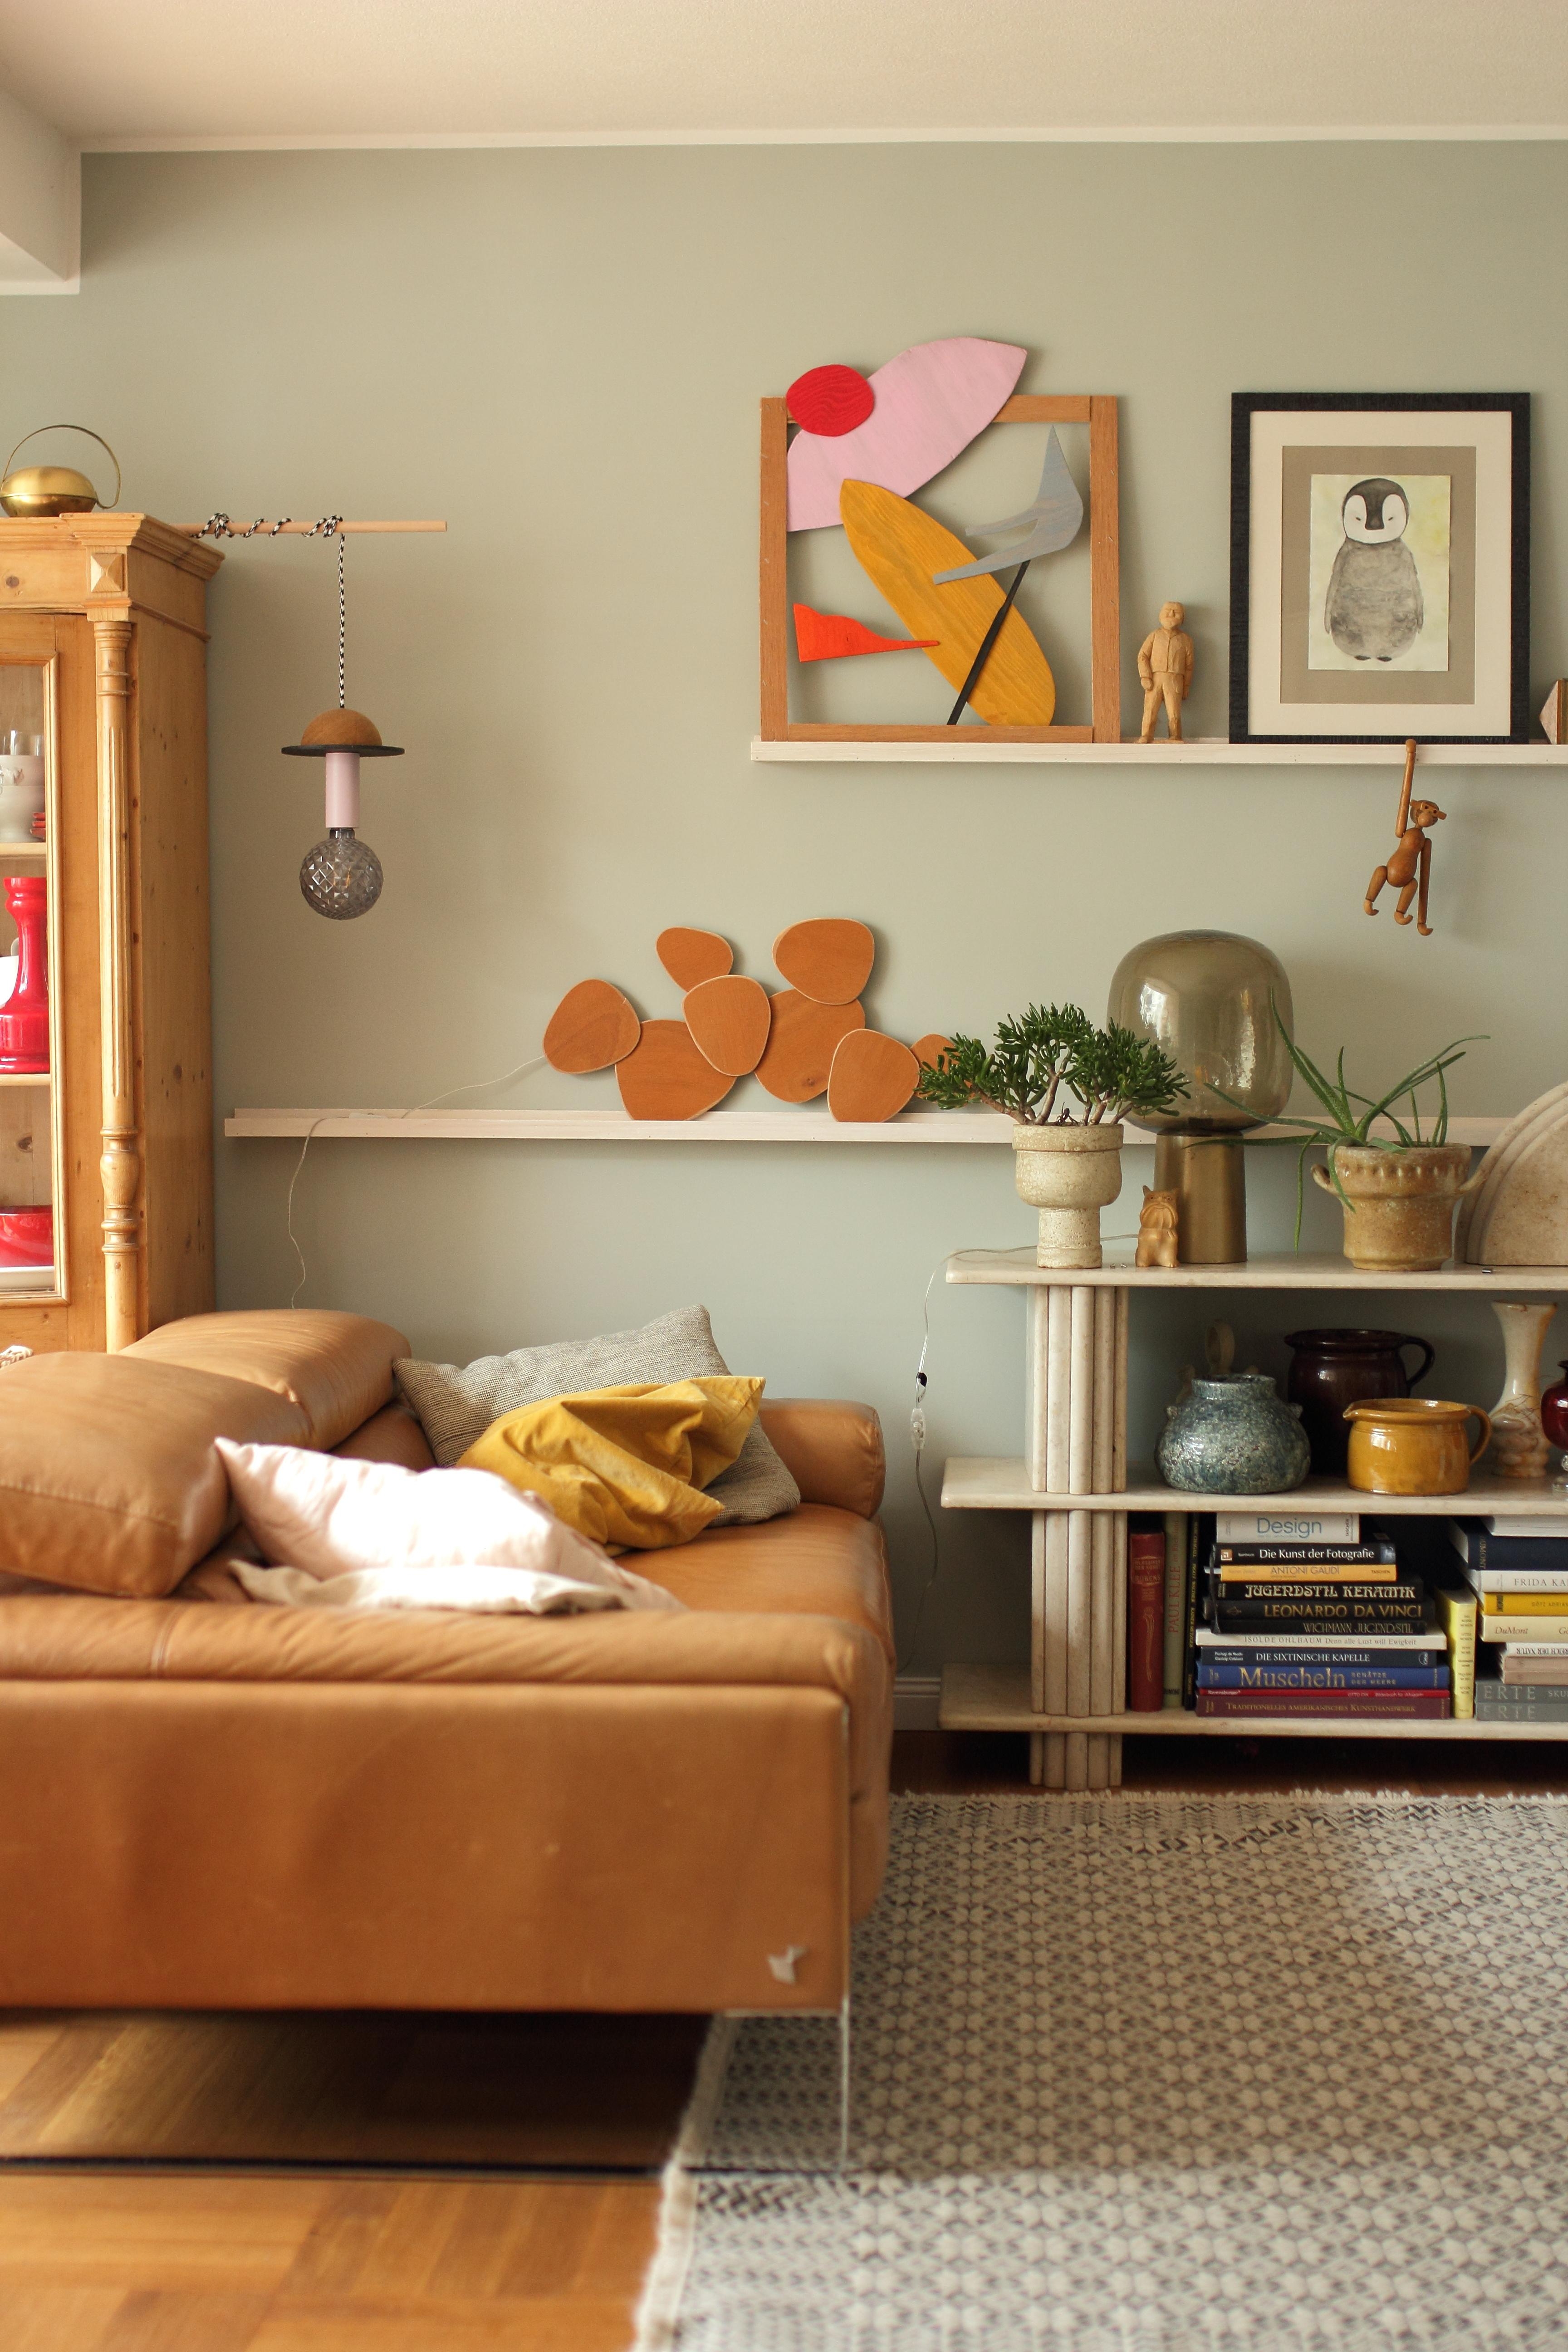 #livingroom #wohnzimmer #diybild #diylampen #alpina #sanftermorgentau #midcentury #marmorregal 